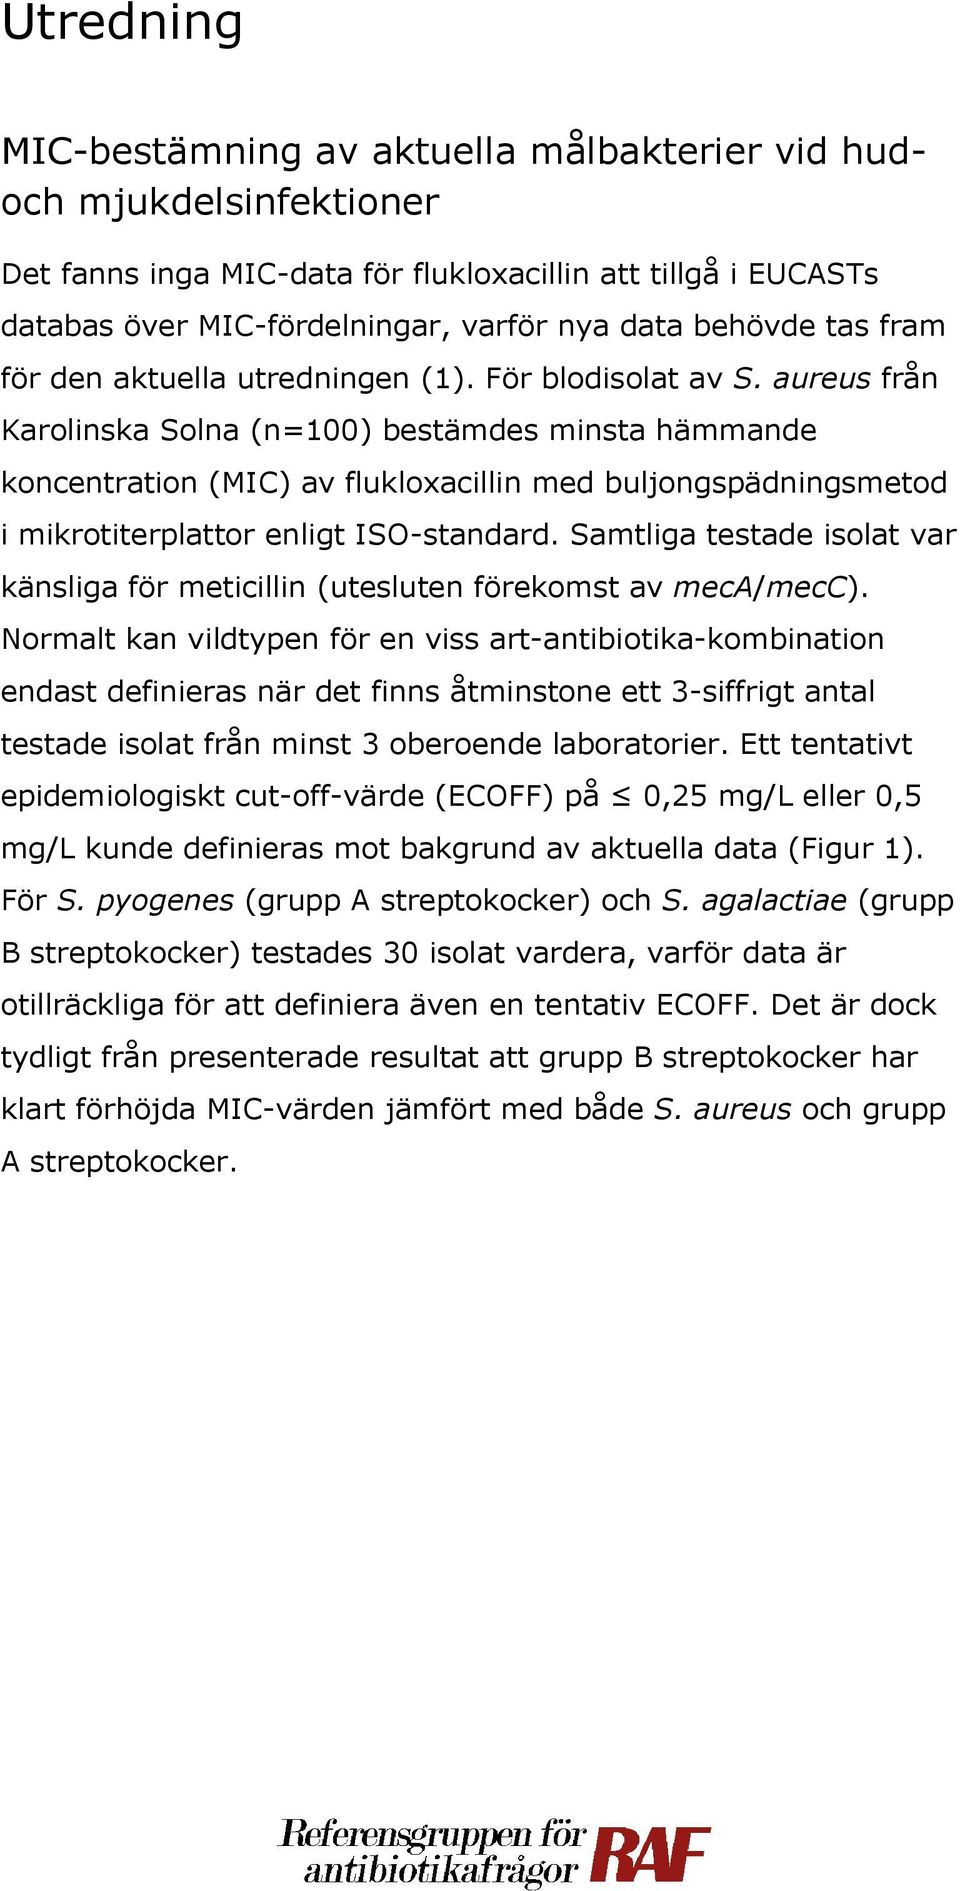 aureus från Karolinska Solna (n=100) bestämdes minsta hämmande koncentration (MIC) av flukloxacillin med buljongspädningsmetod i mikrotiterplattor enligt ISO-standard.